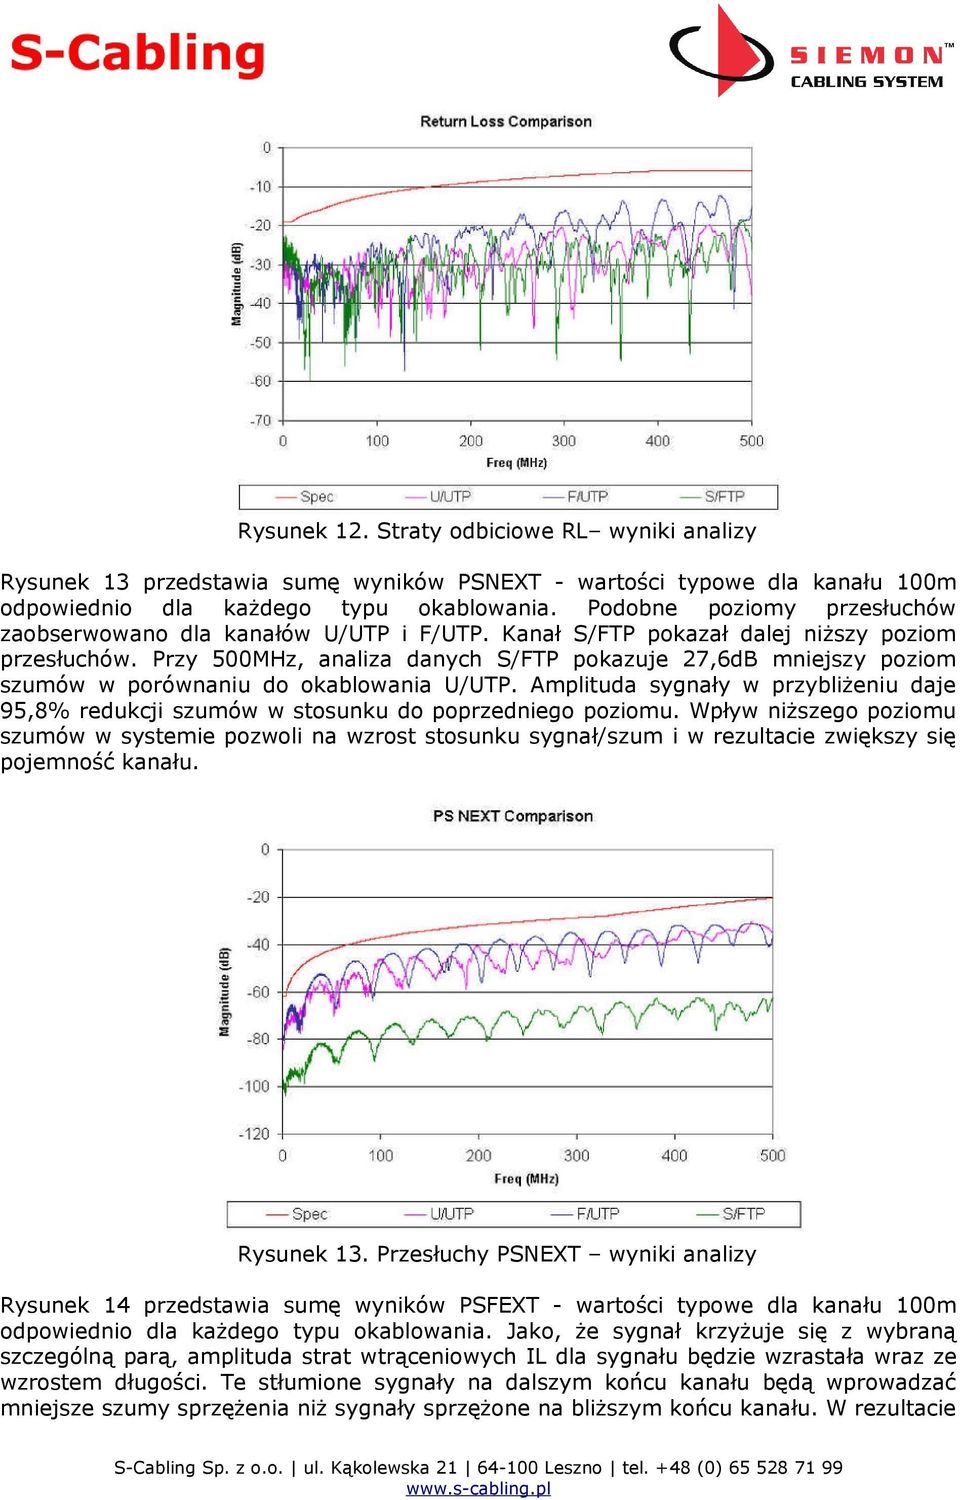 Przy 500MHz, analiza danych S/FTP pokazuje 27,6dB mniejszy poziom szumów w porównaniu do okablowania U/UTP.